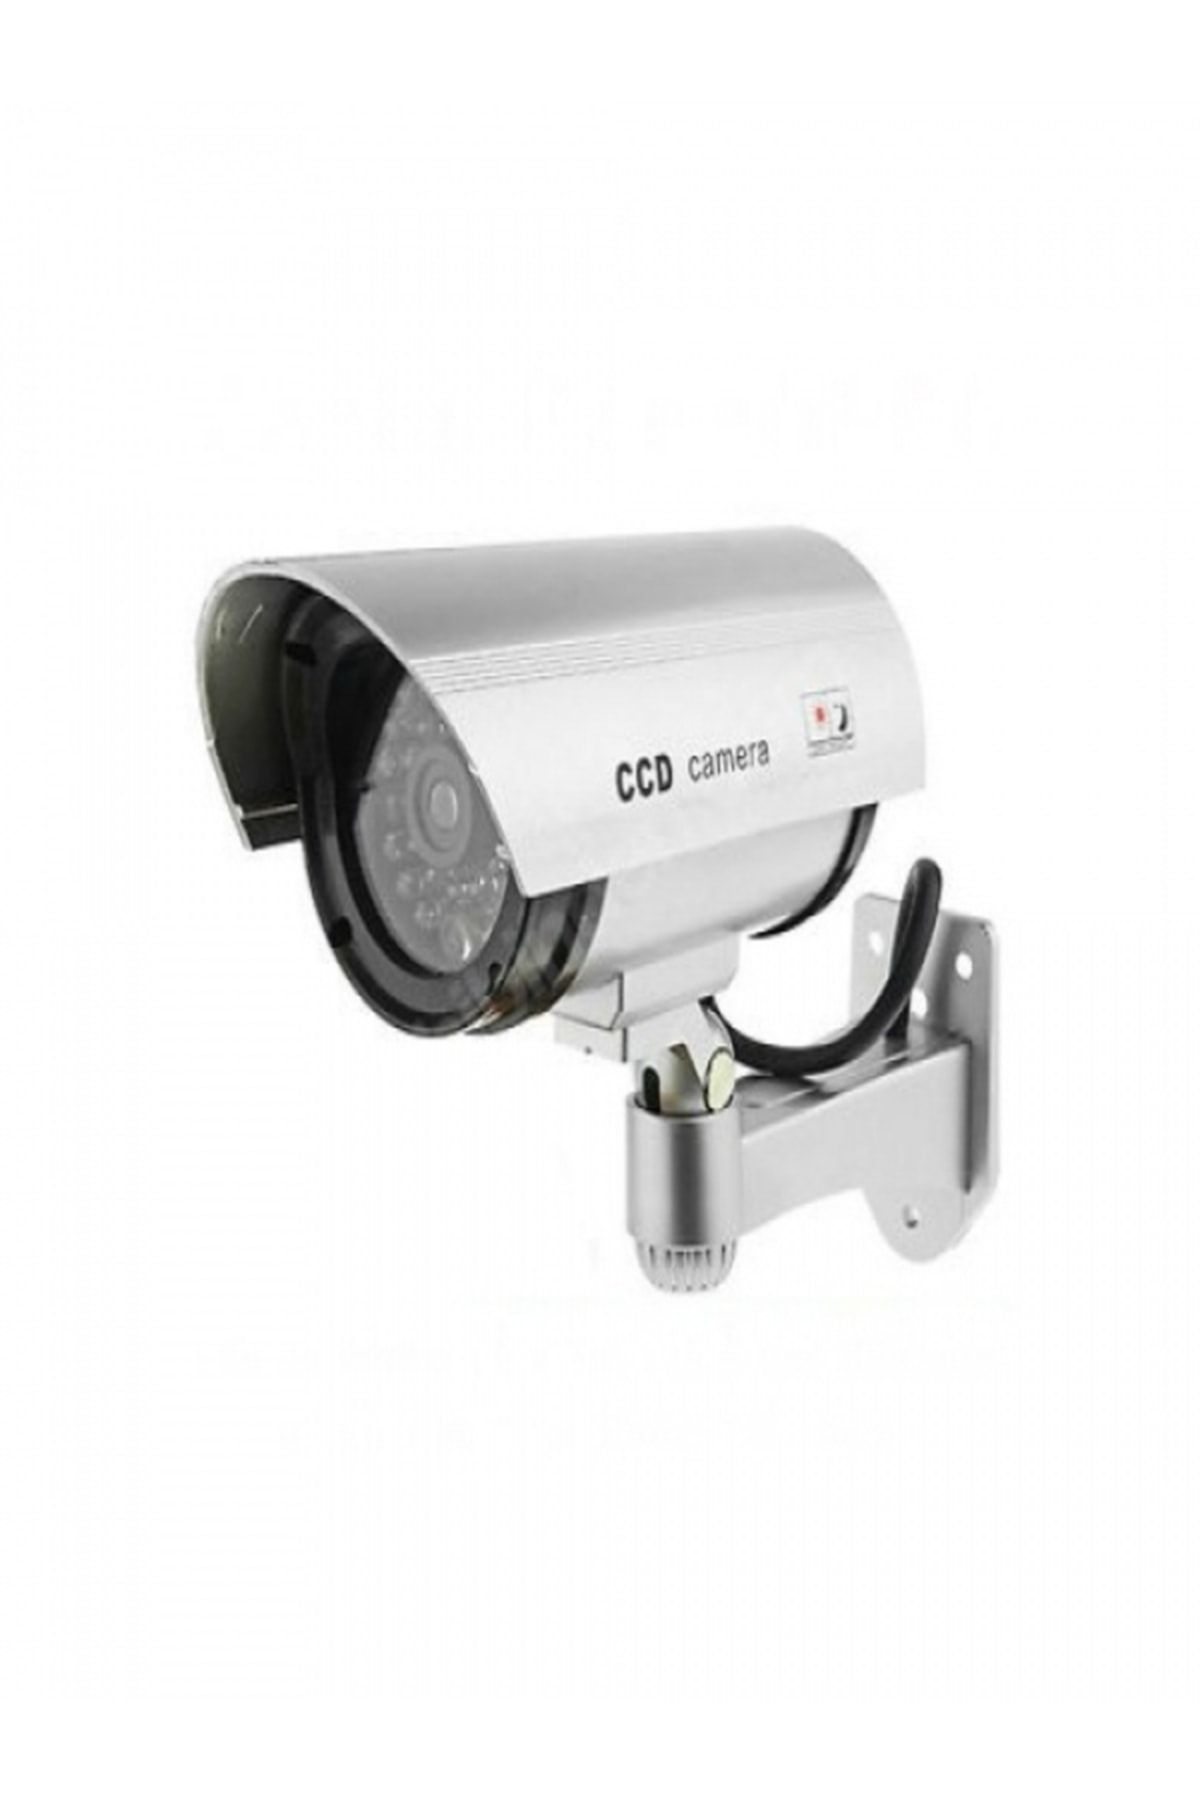 Genel Markalar Caydırıcı Güvenlik Kamerası Gece Görüşlü Model